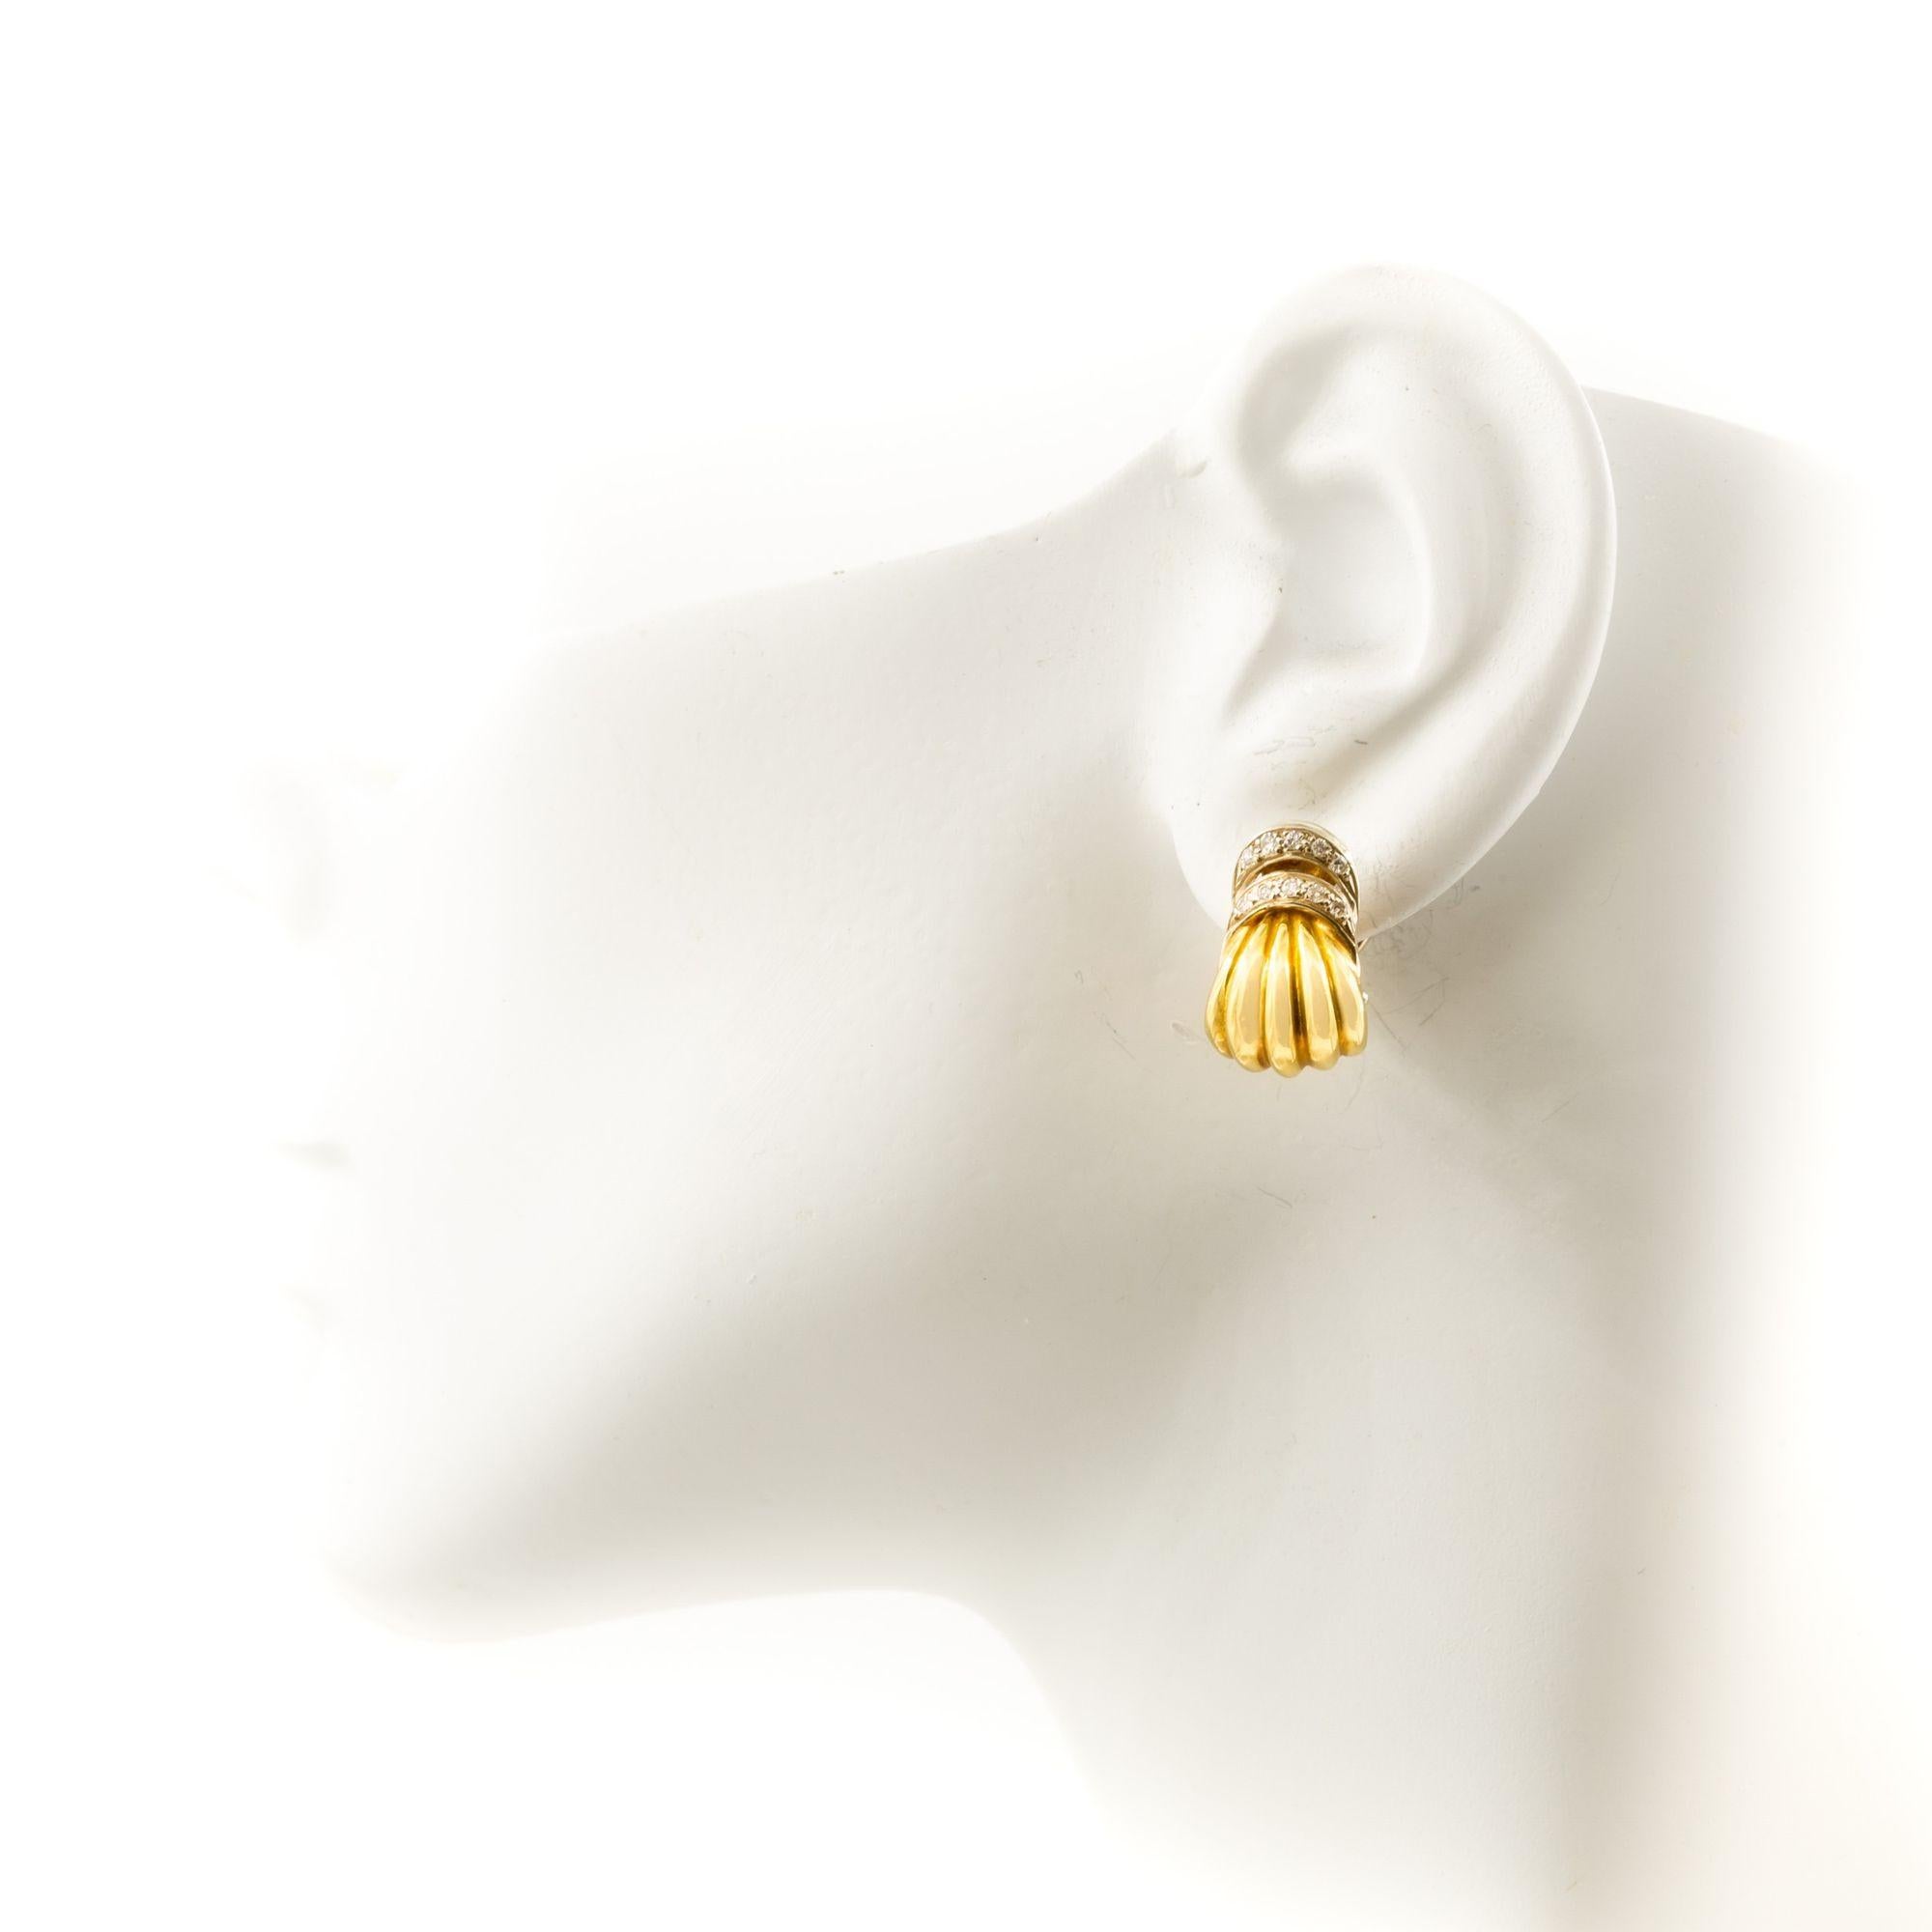 Paire de boucles d'oreilles en or jaune 18K et pierres précieuses
Article # C104609

Une belle paire de boucles d'oreilles en or jaune 18 carats, présentant un design tourbillonnant qui leur confère un aspect dynamique et fluide. Les tourbillons